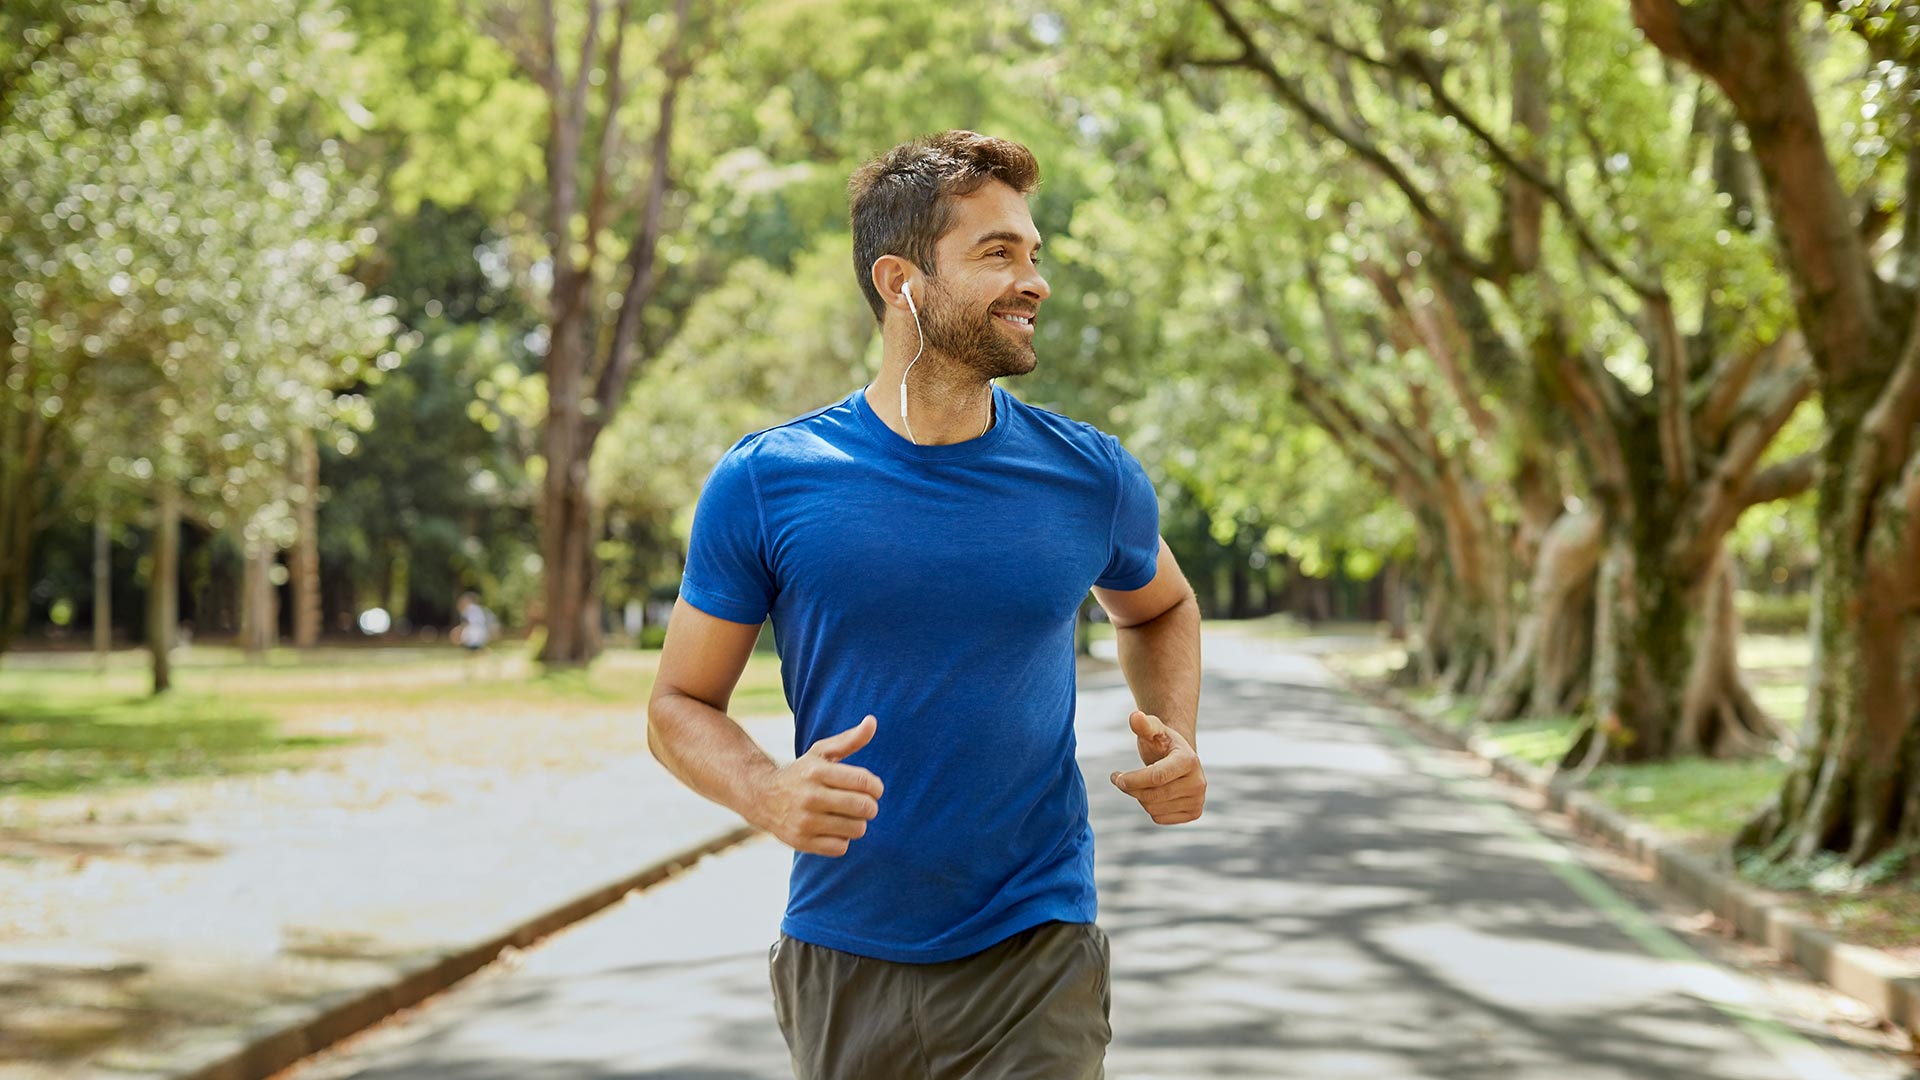 Un corredor que ya lleva dos o tres años entrenando puede correr un maratón al año siempre y cuando pueda comprometerse con el entrenamiento (Gettyimages)